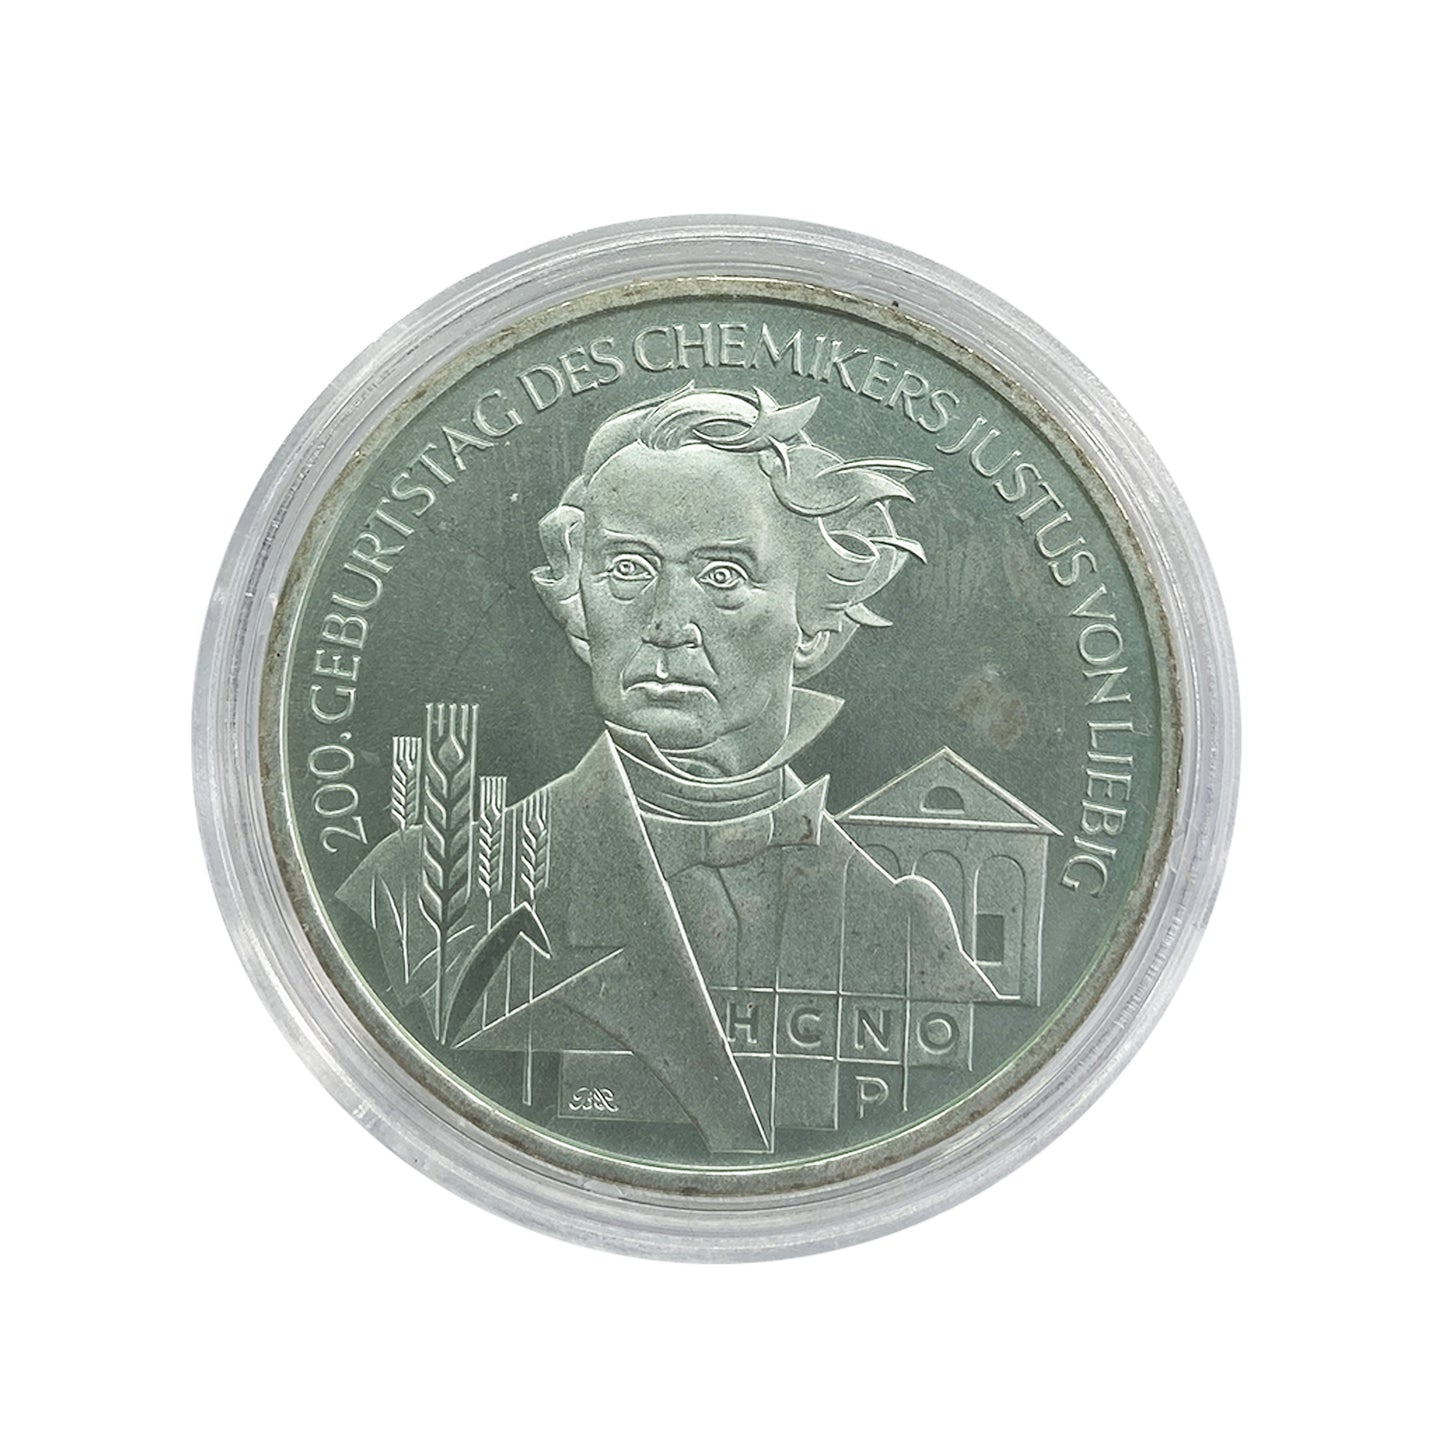 Alemania - Moneda 10 euros plata 2003 - 200 Aniversario de Justus von Liebig